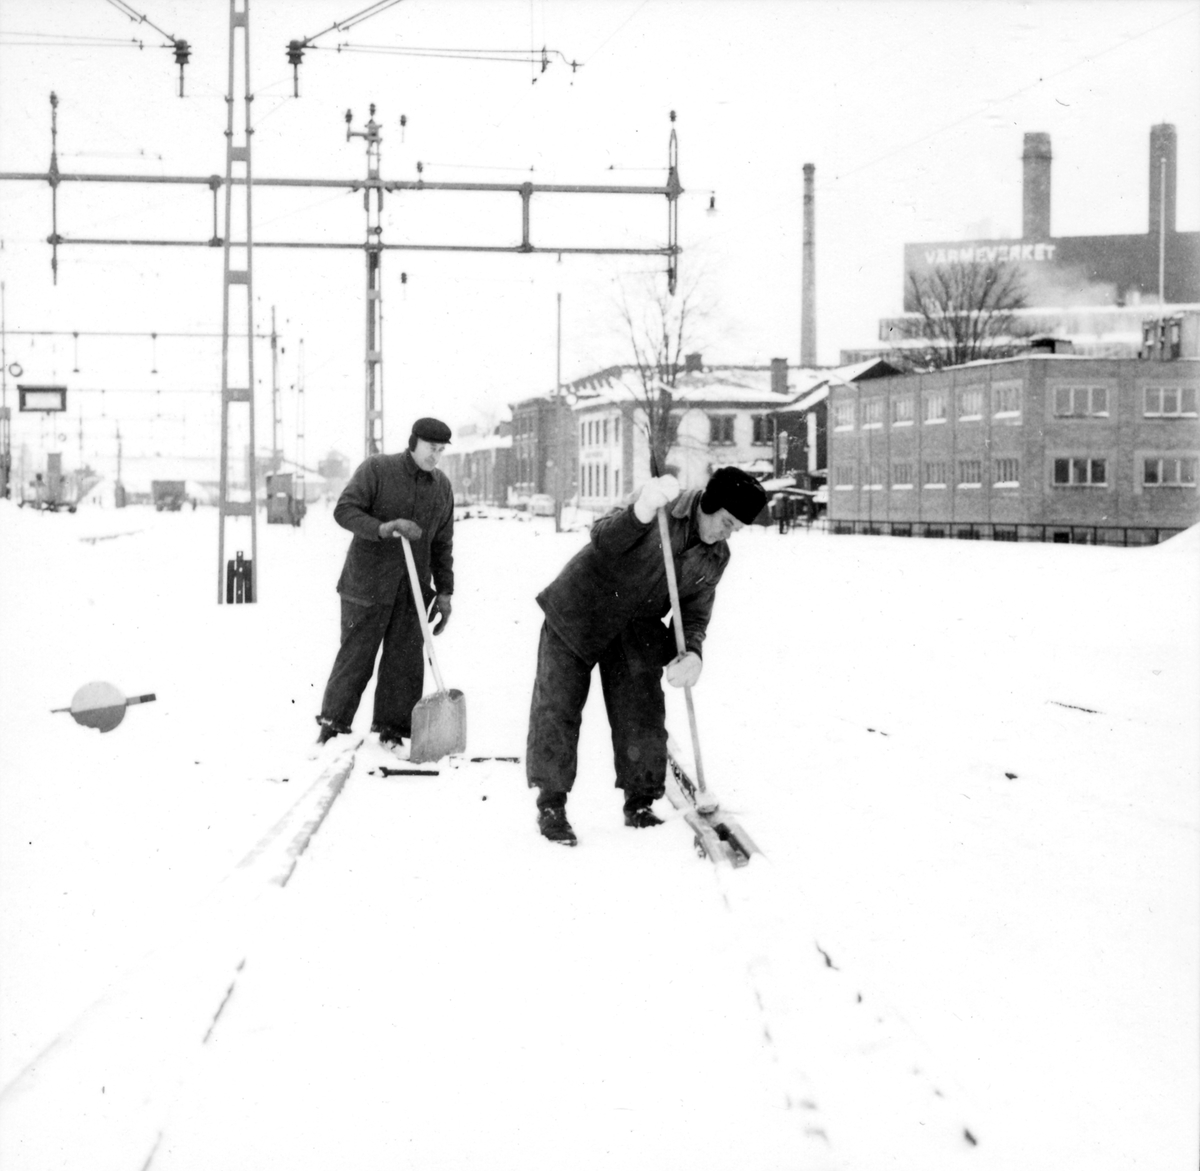 Orig. text: Vinterväghållning.

Snöröjning på banvallarna vid Järnvägsstationen.